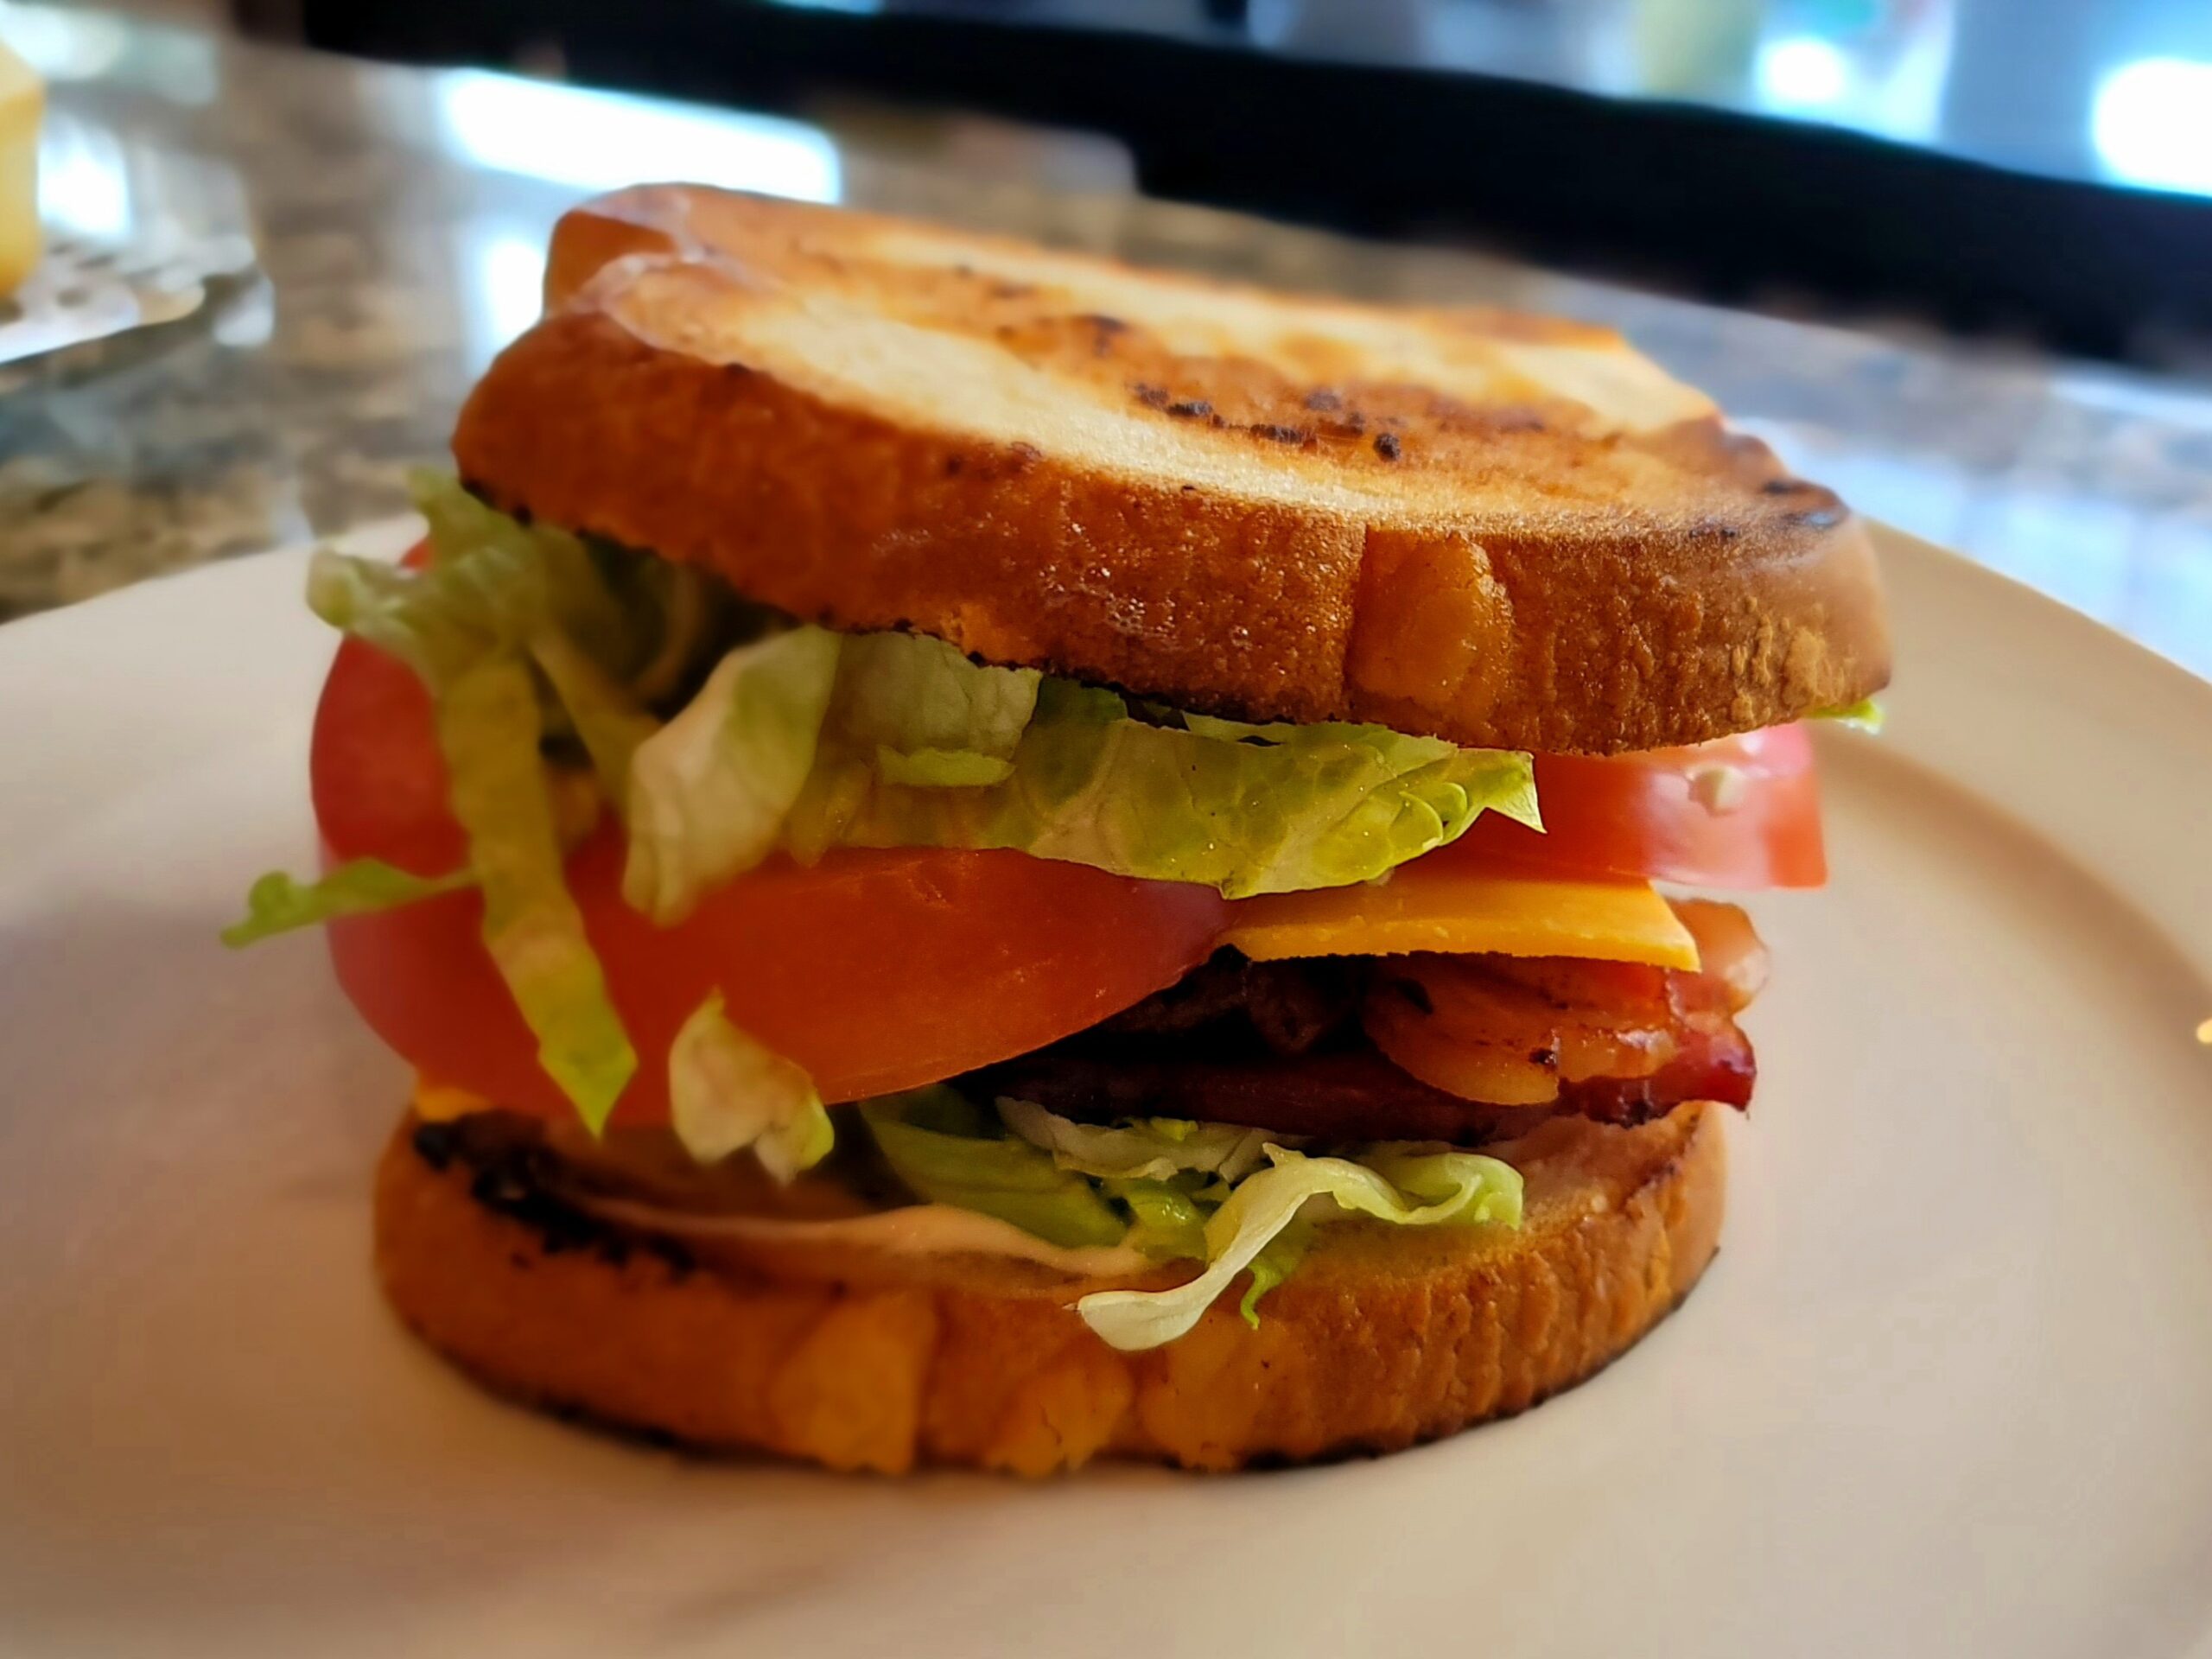 Classic BLT Sandwich with Cheddar